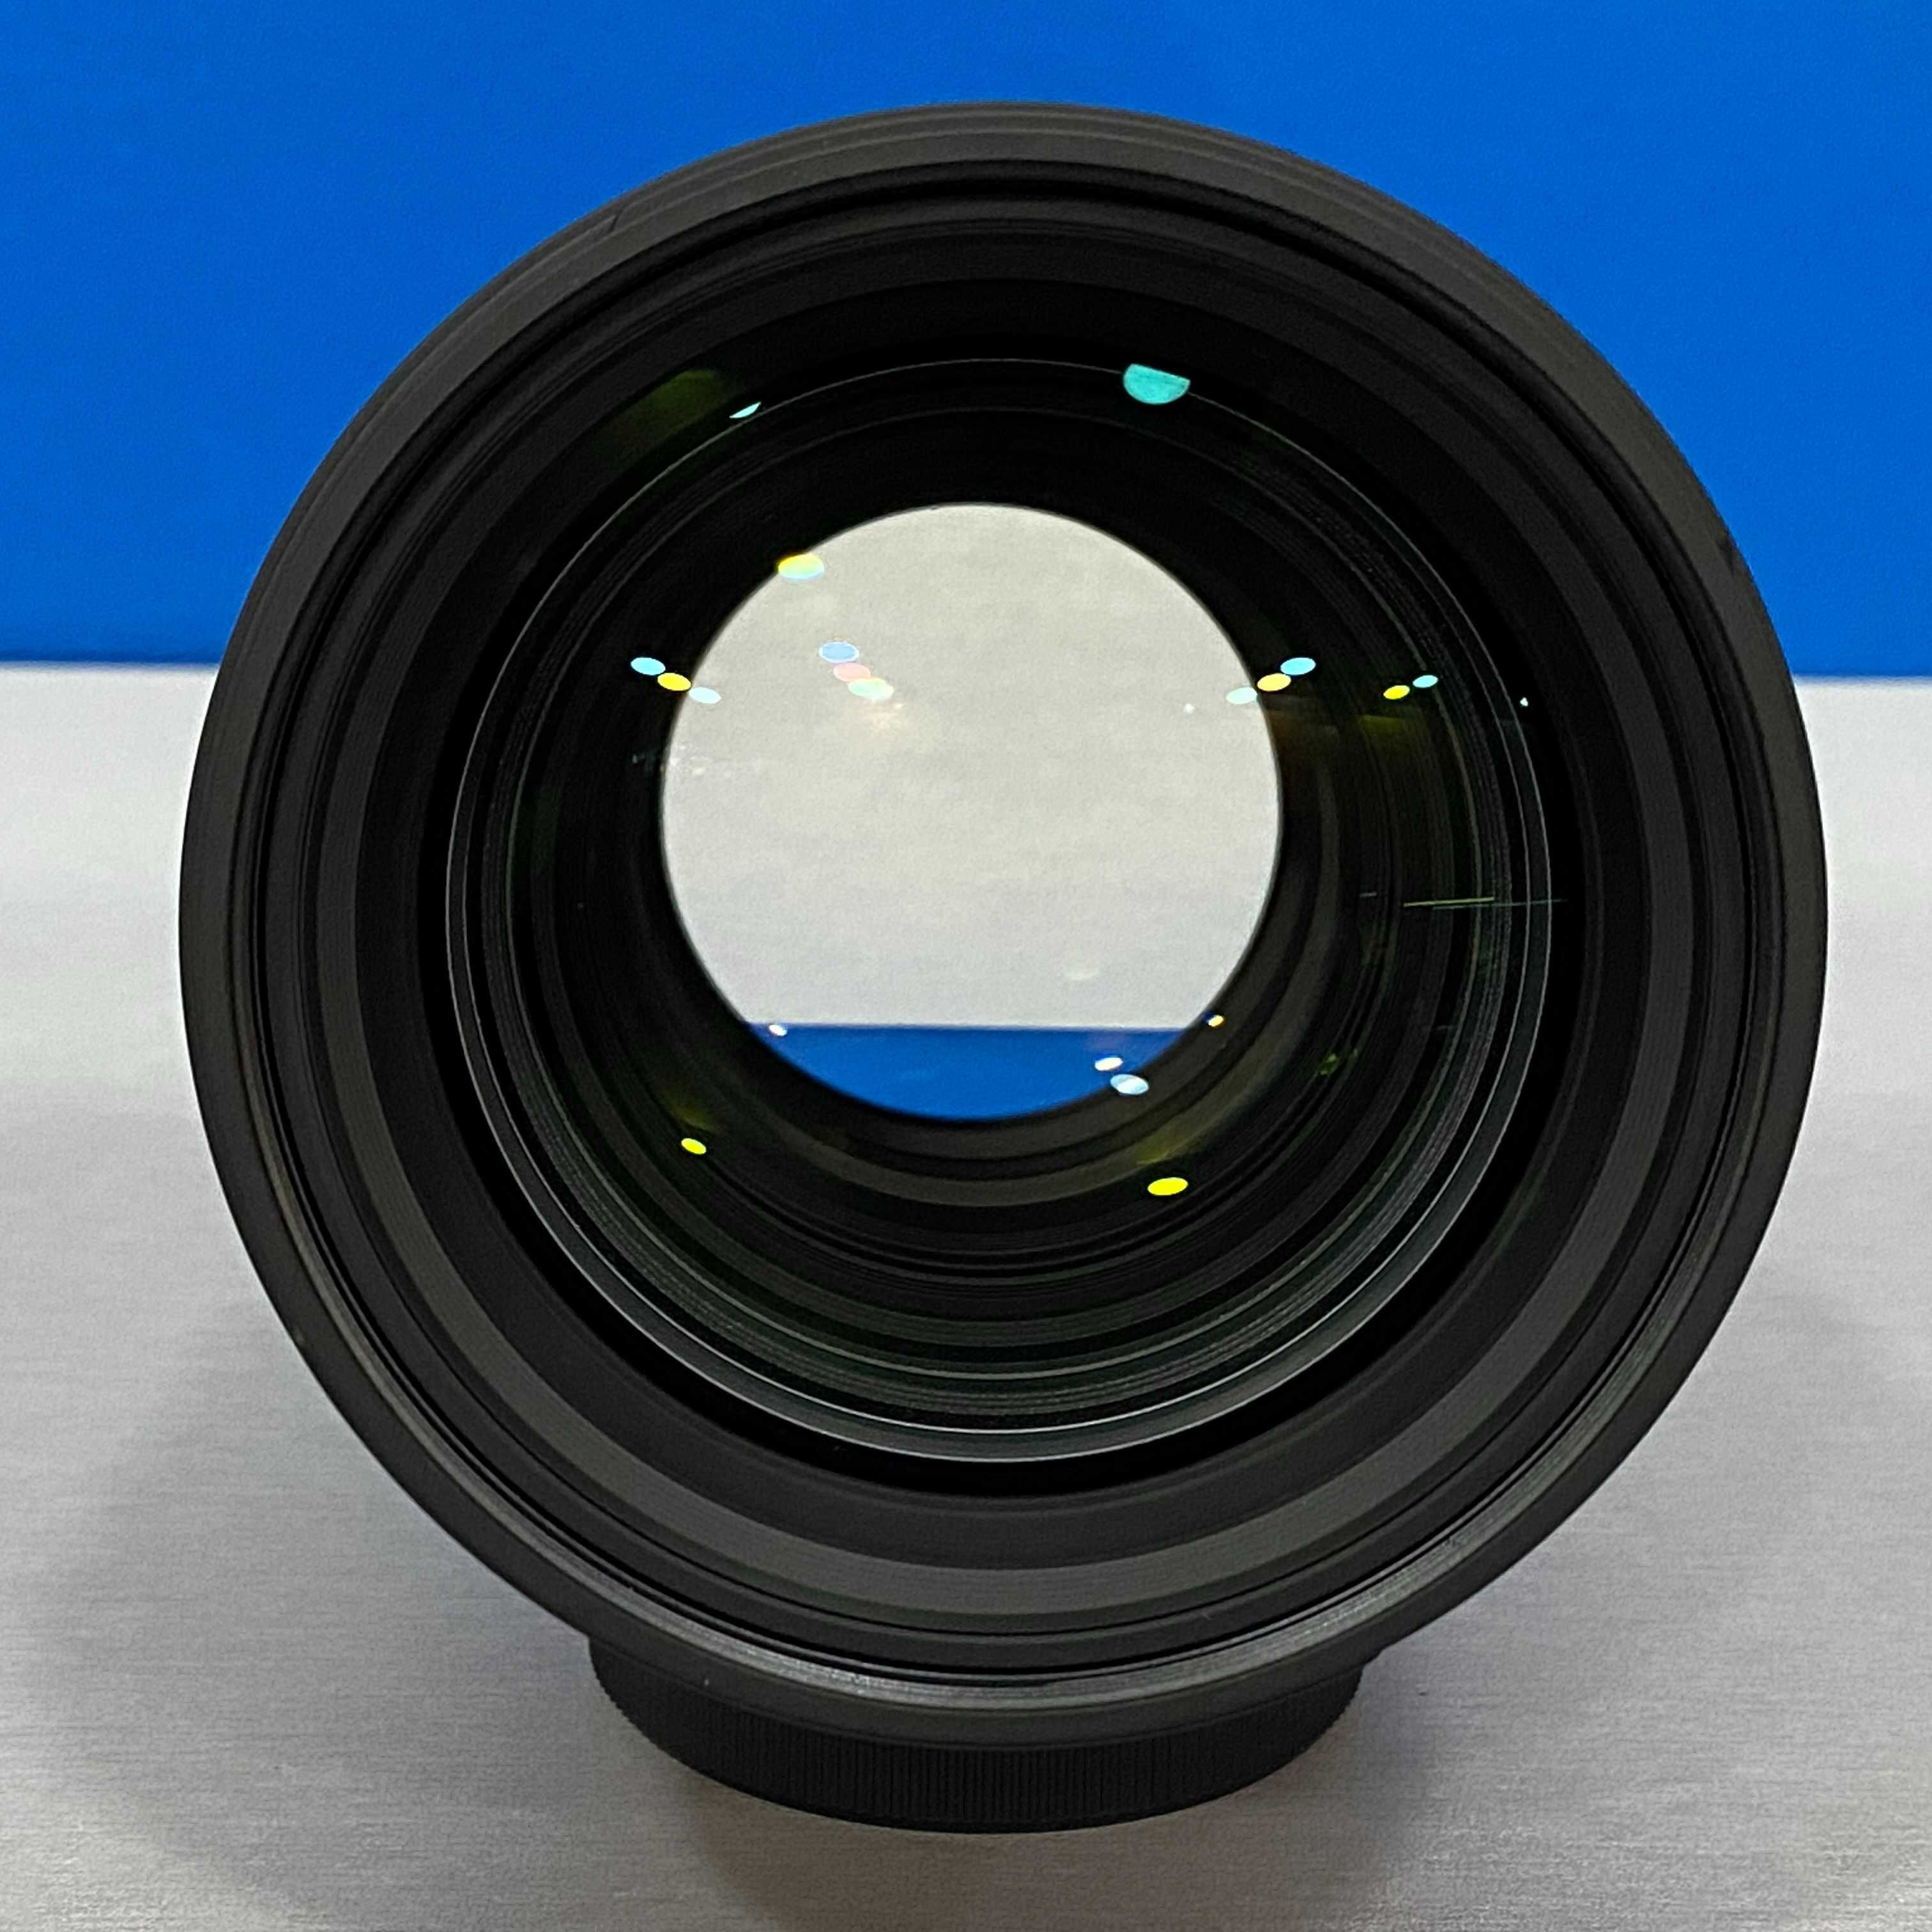 Sigma ART 85mm f/1.4 DG HSM (Nikon)